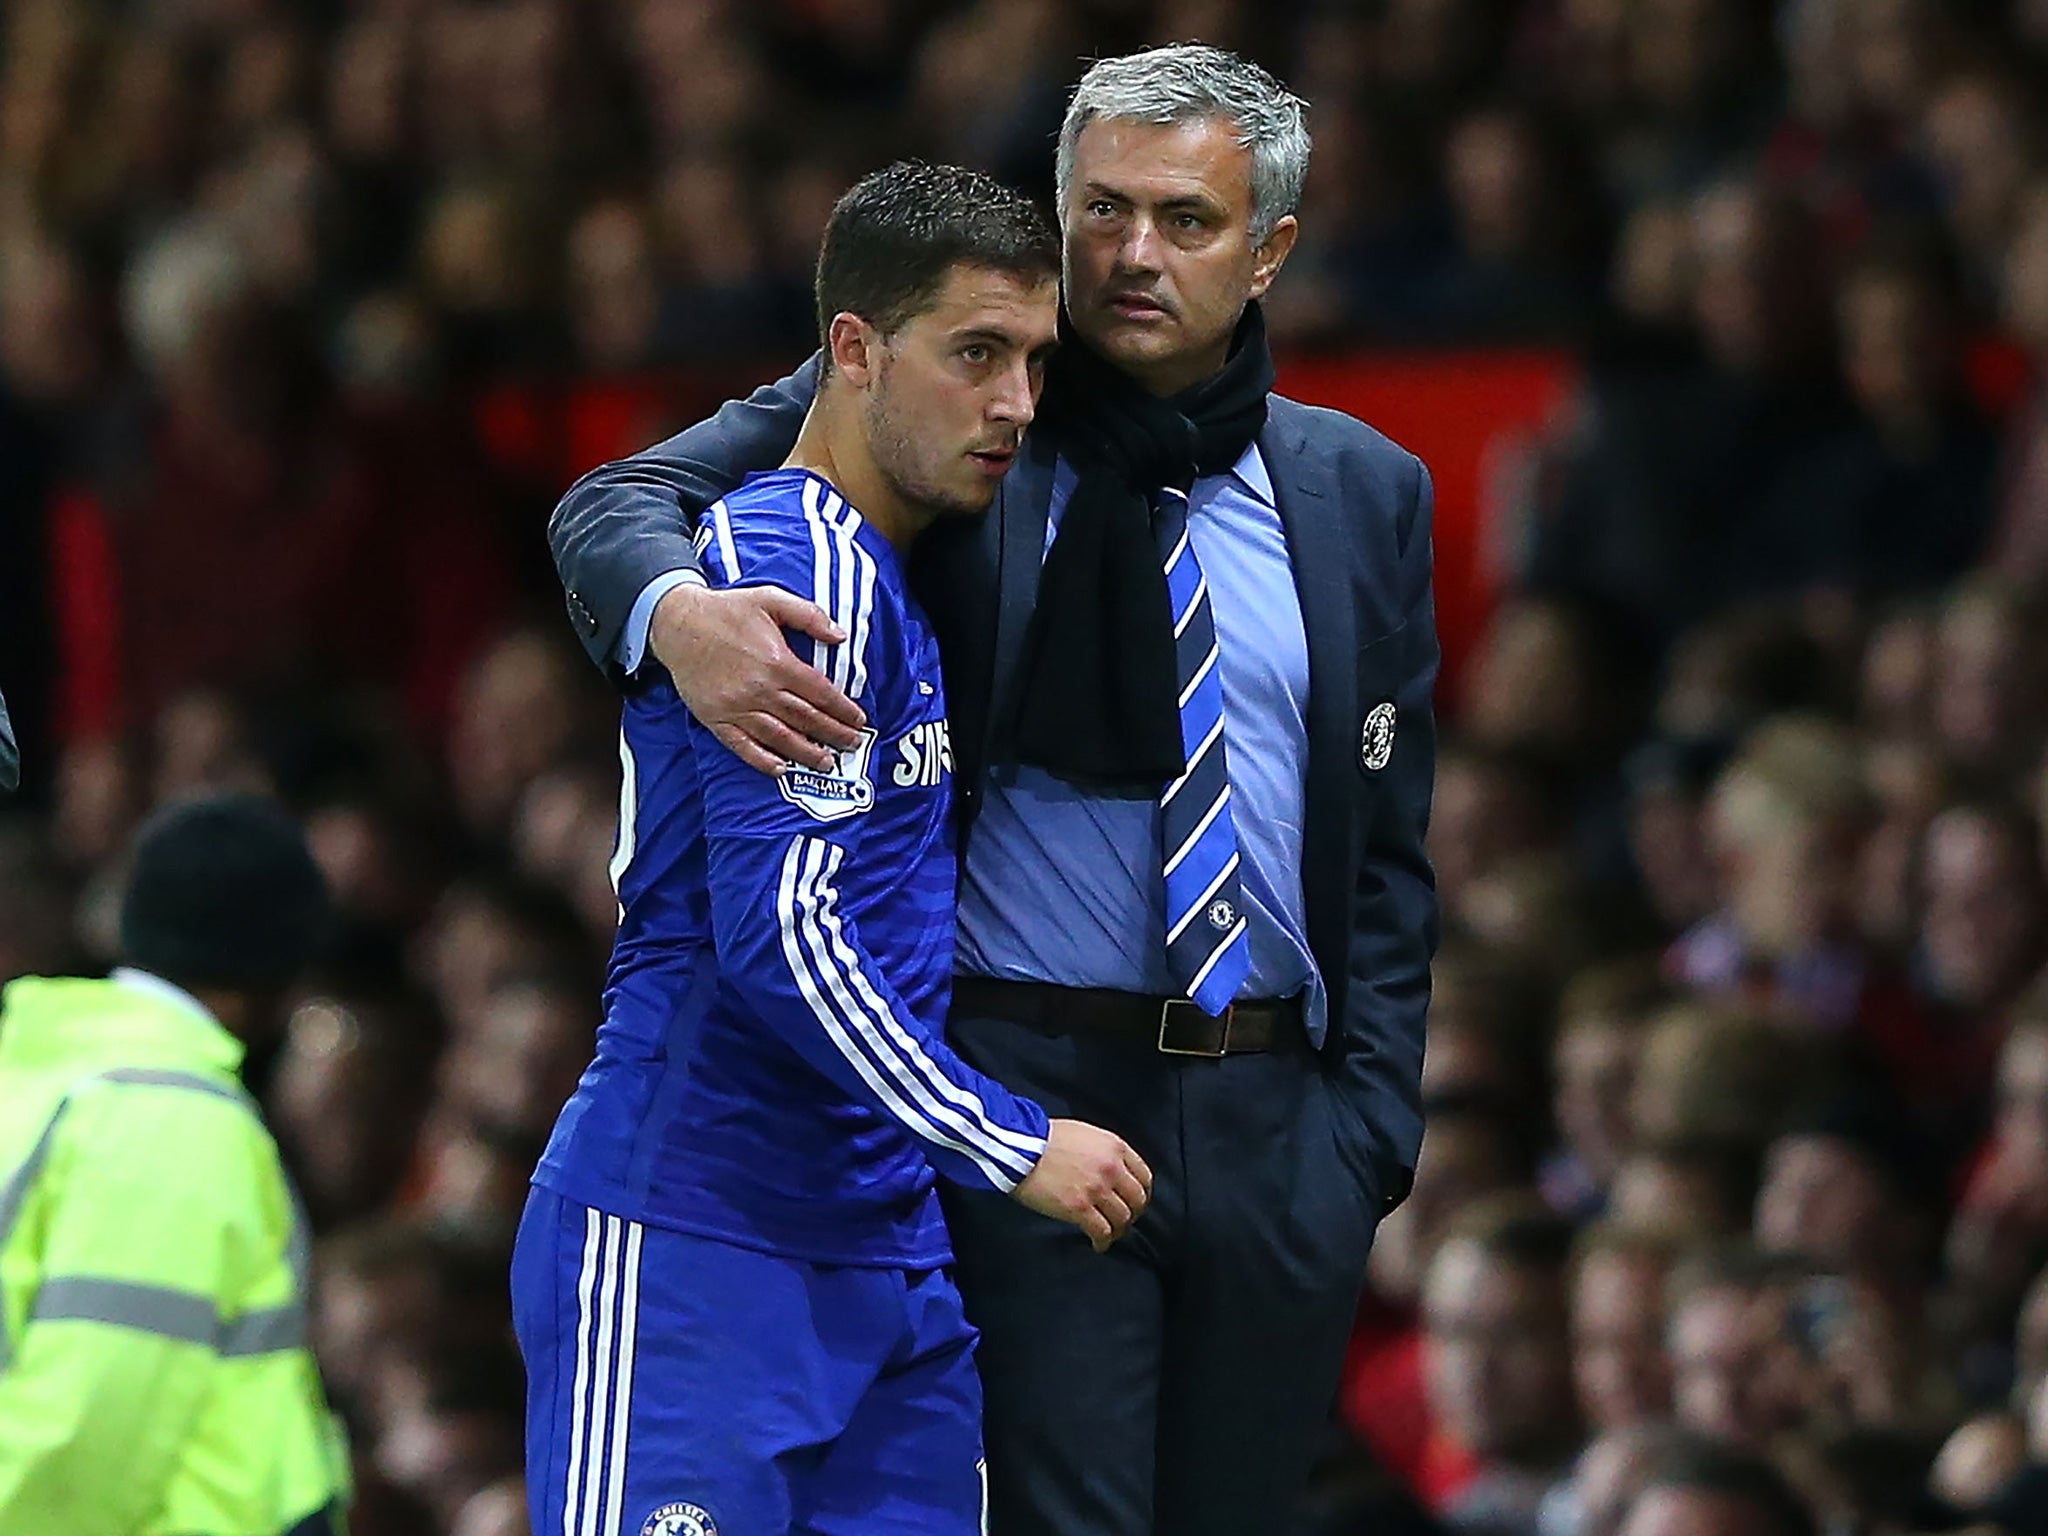 Jose Mourinho puts a consoling arm around Eden Hazard